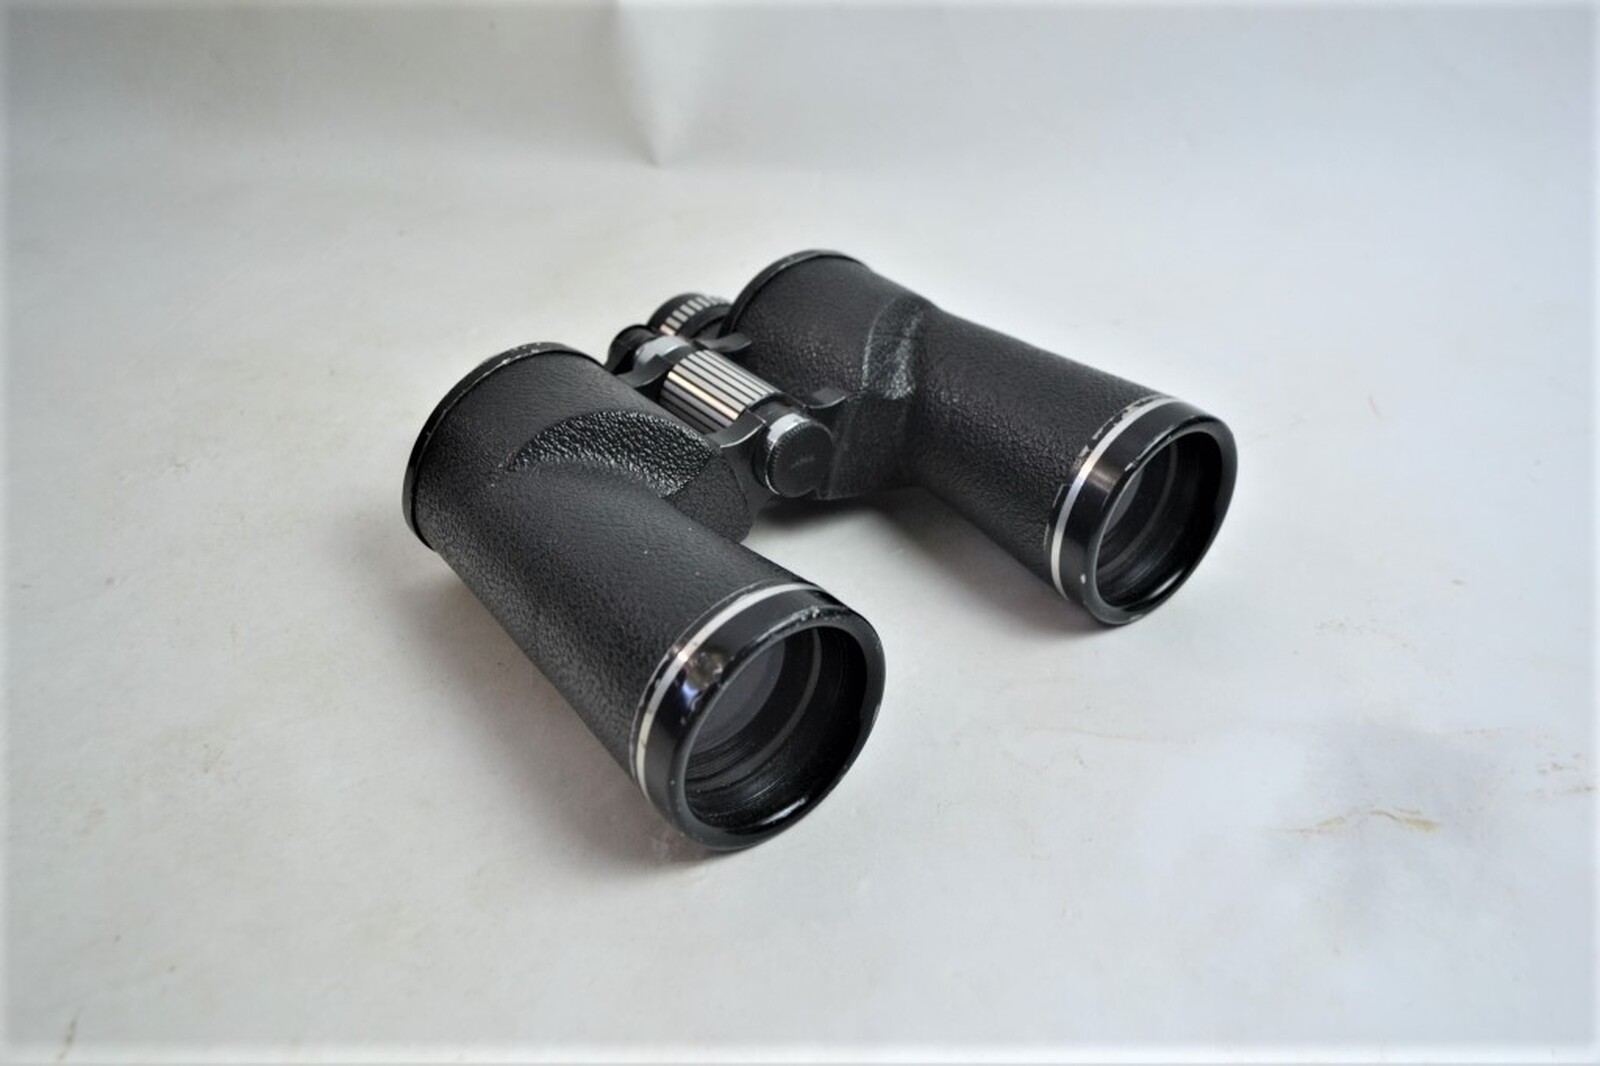 20th Century Chinon Binoculars